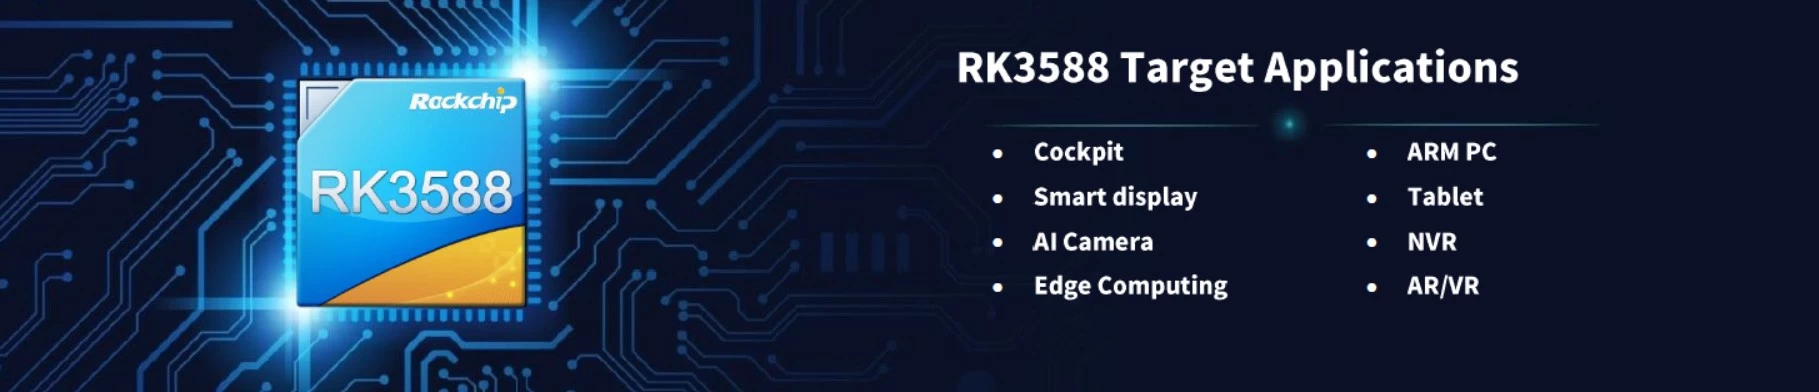 RK3588: Redefining Smart TV Box Innovation